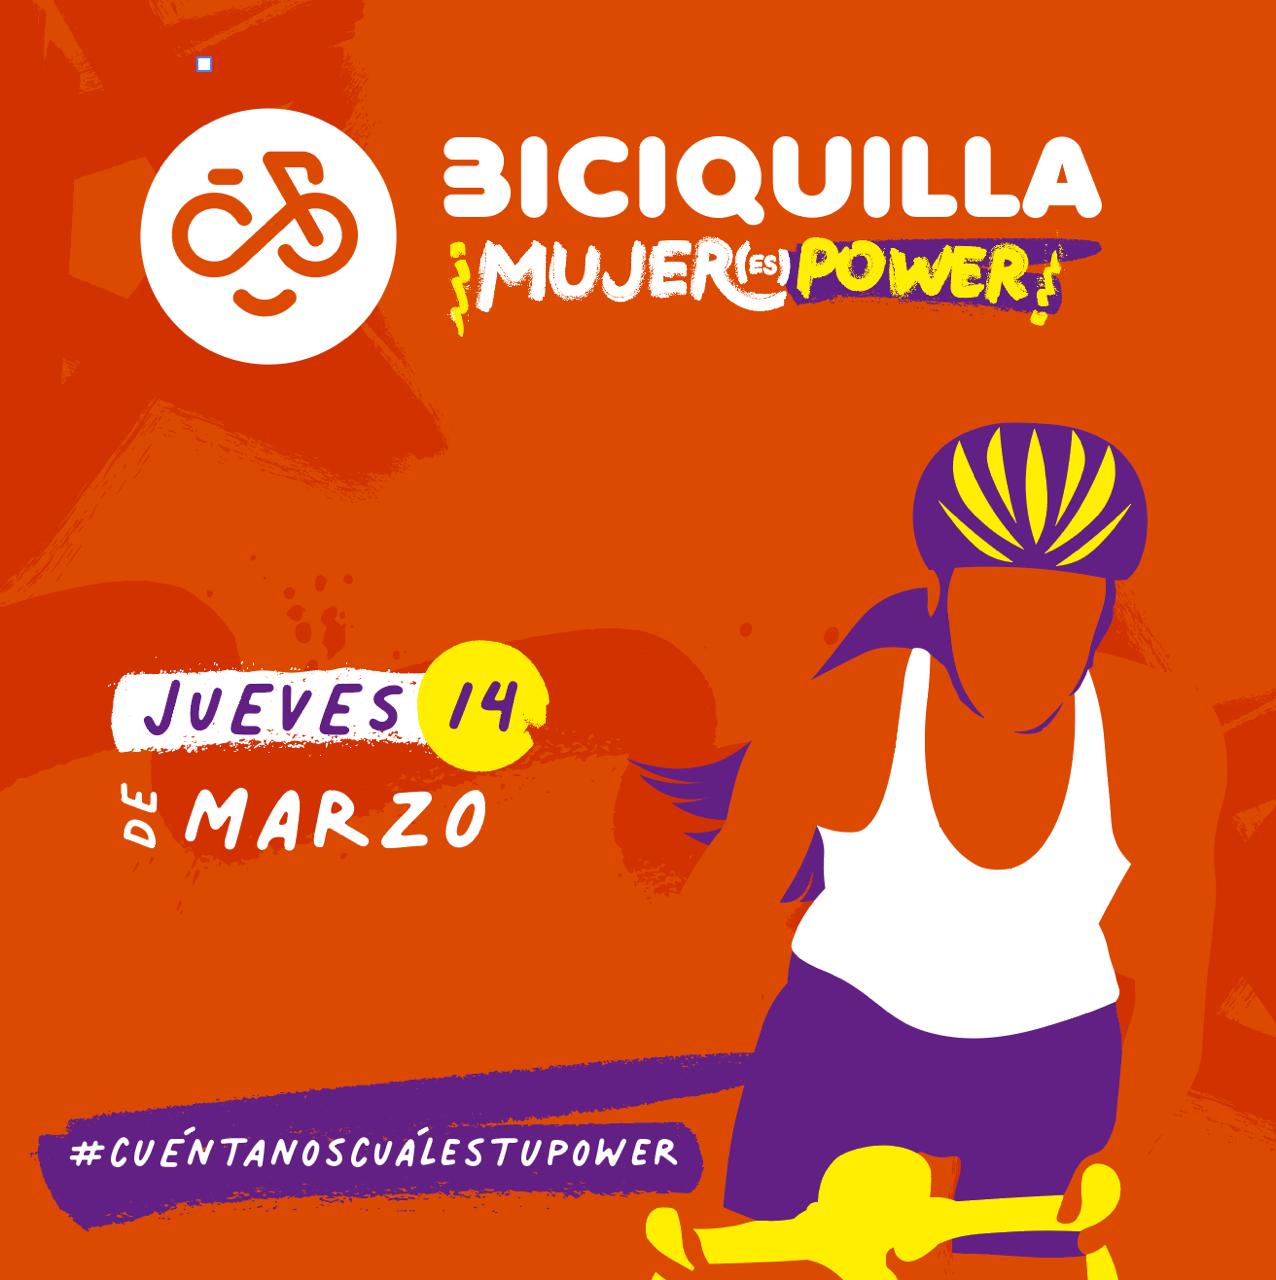 Sumate a la Biciquilla “Mujer Power”, este jueves 14 de marzo